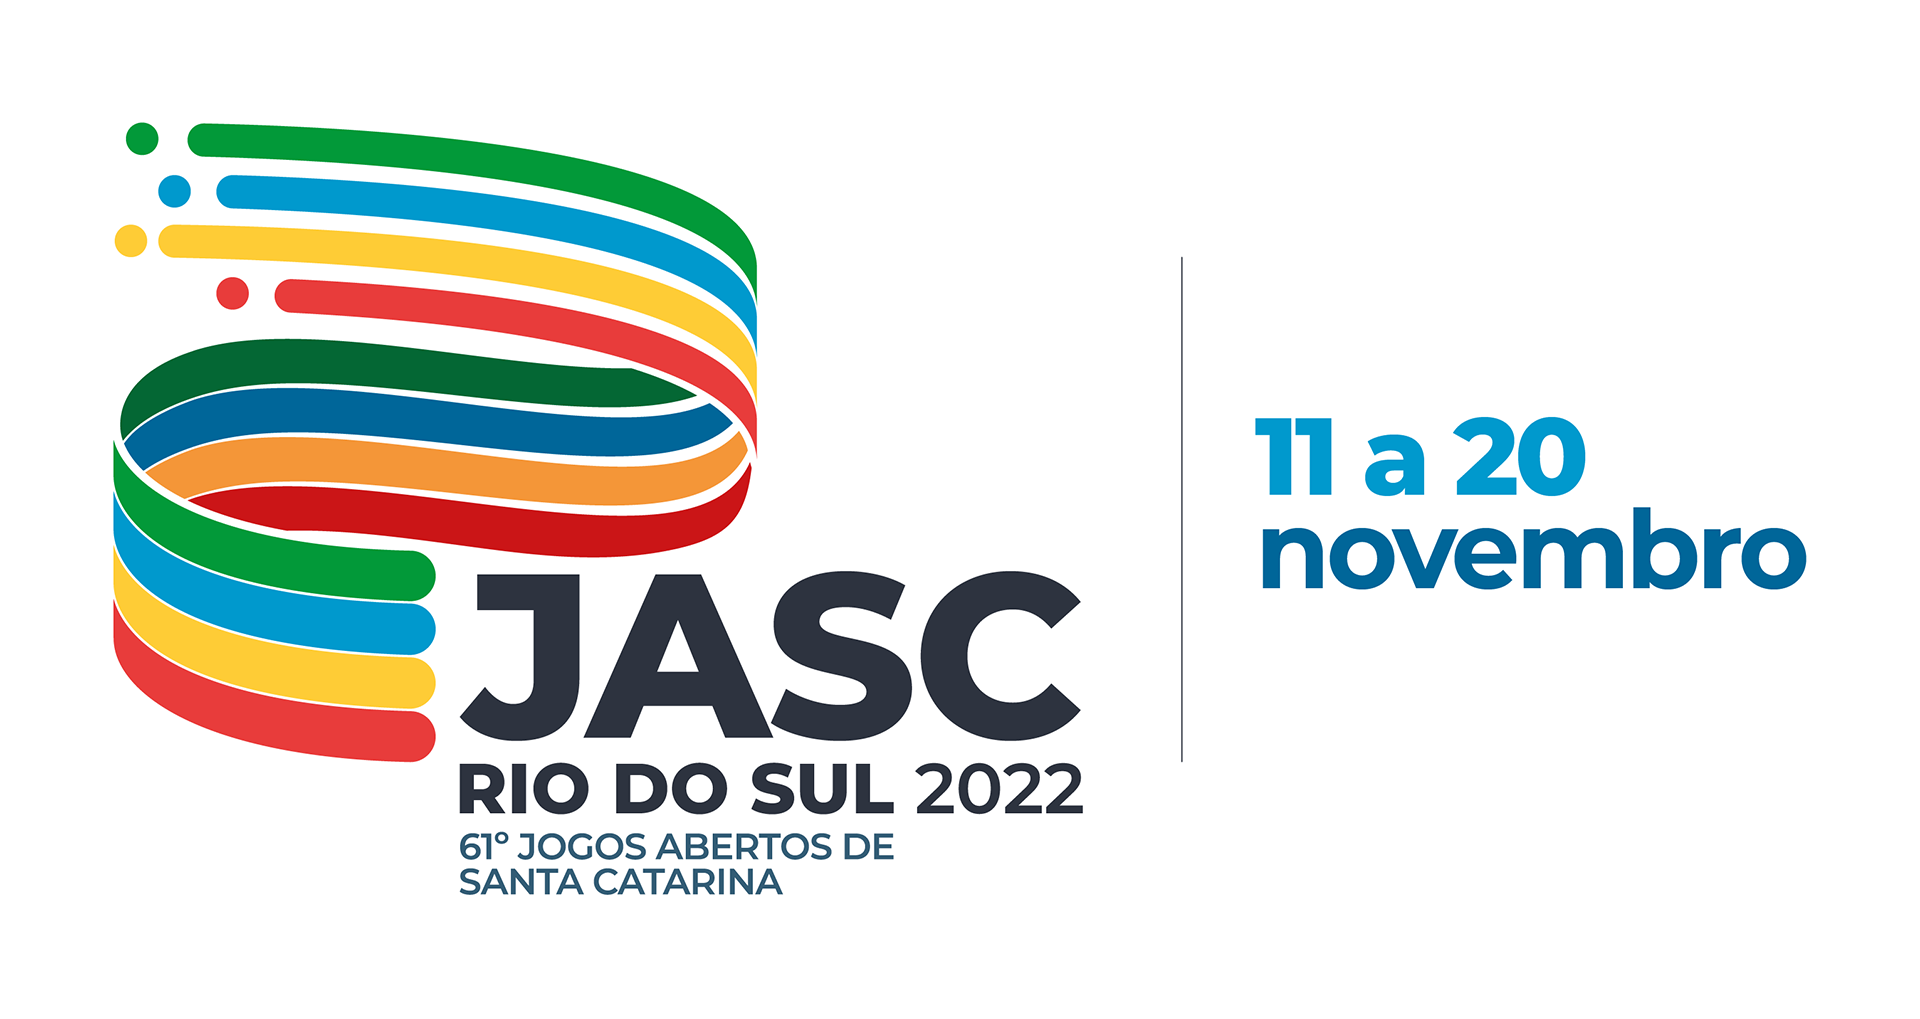 Rio do Sul vai sediar os Jogos Abertos de Santa Catarina neste mês